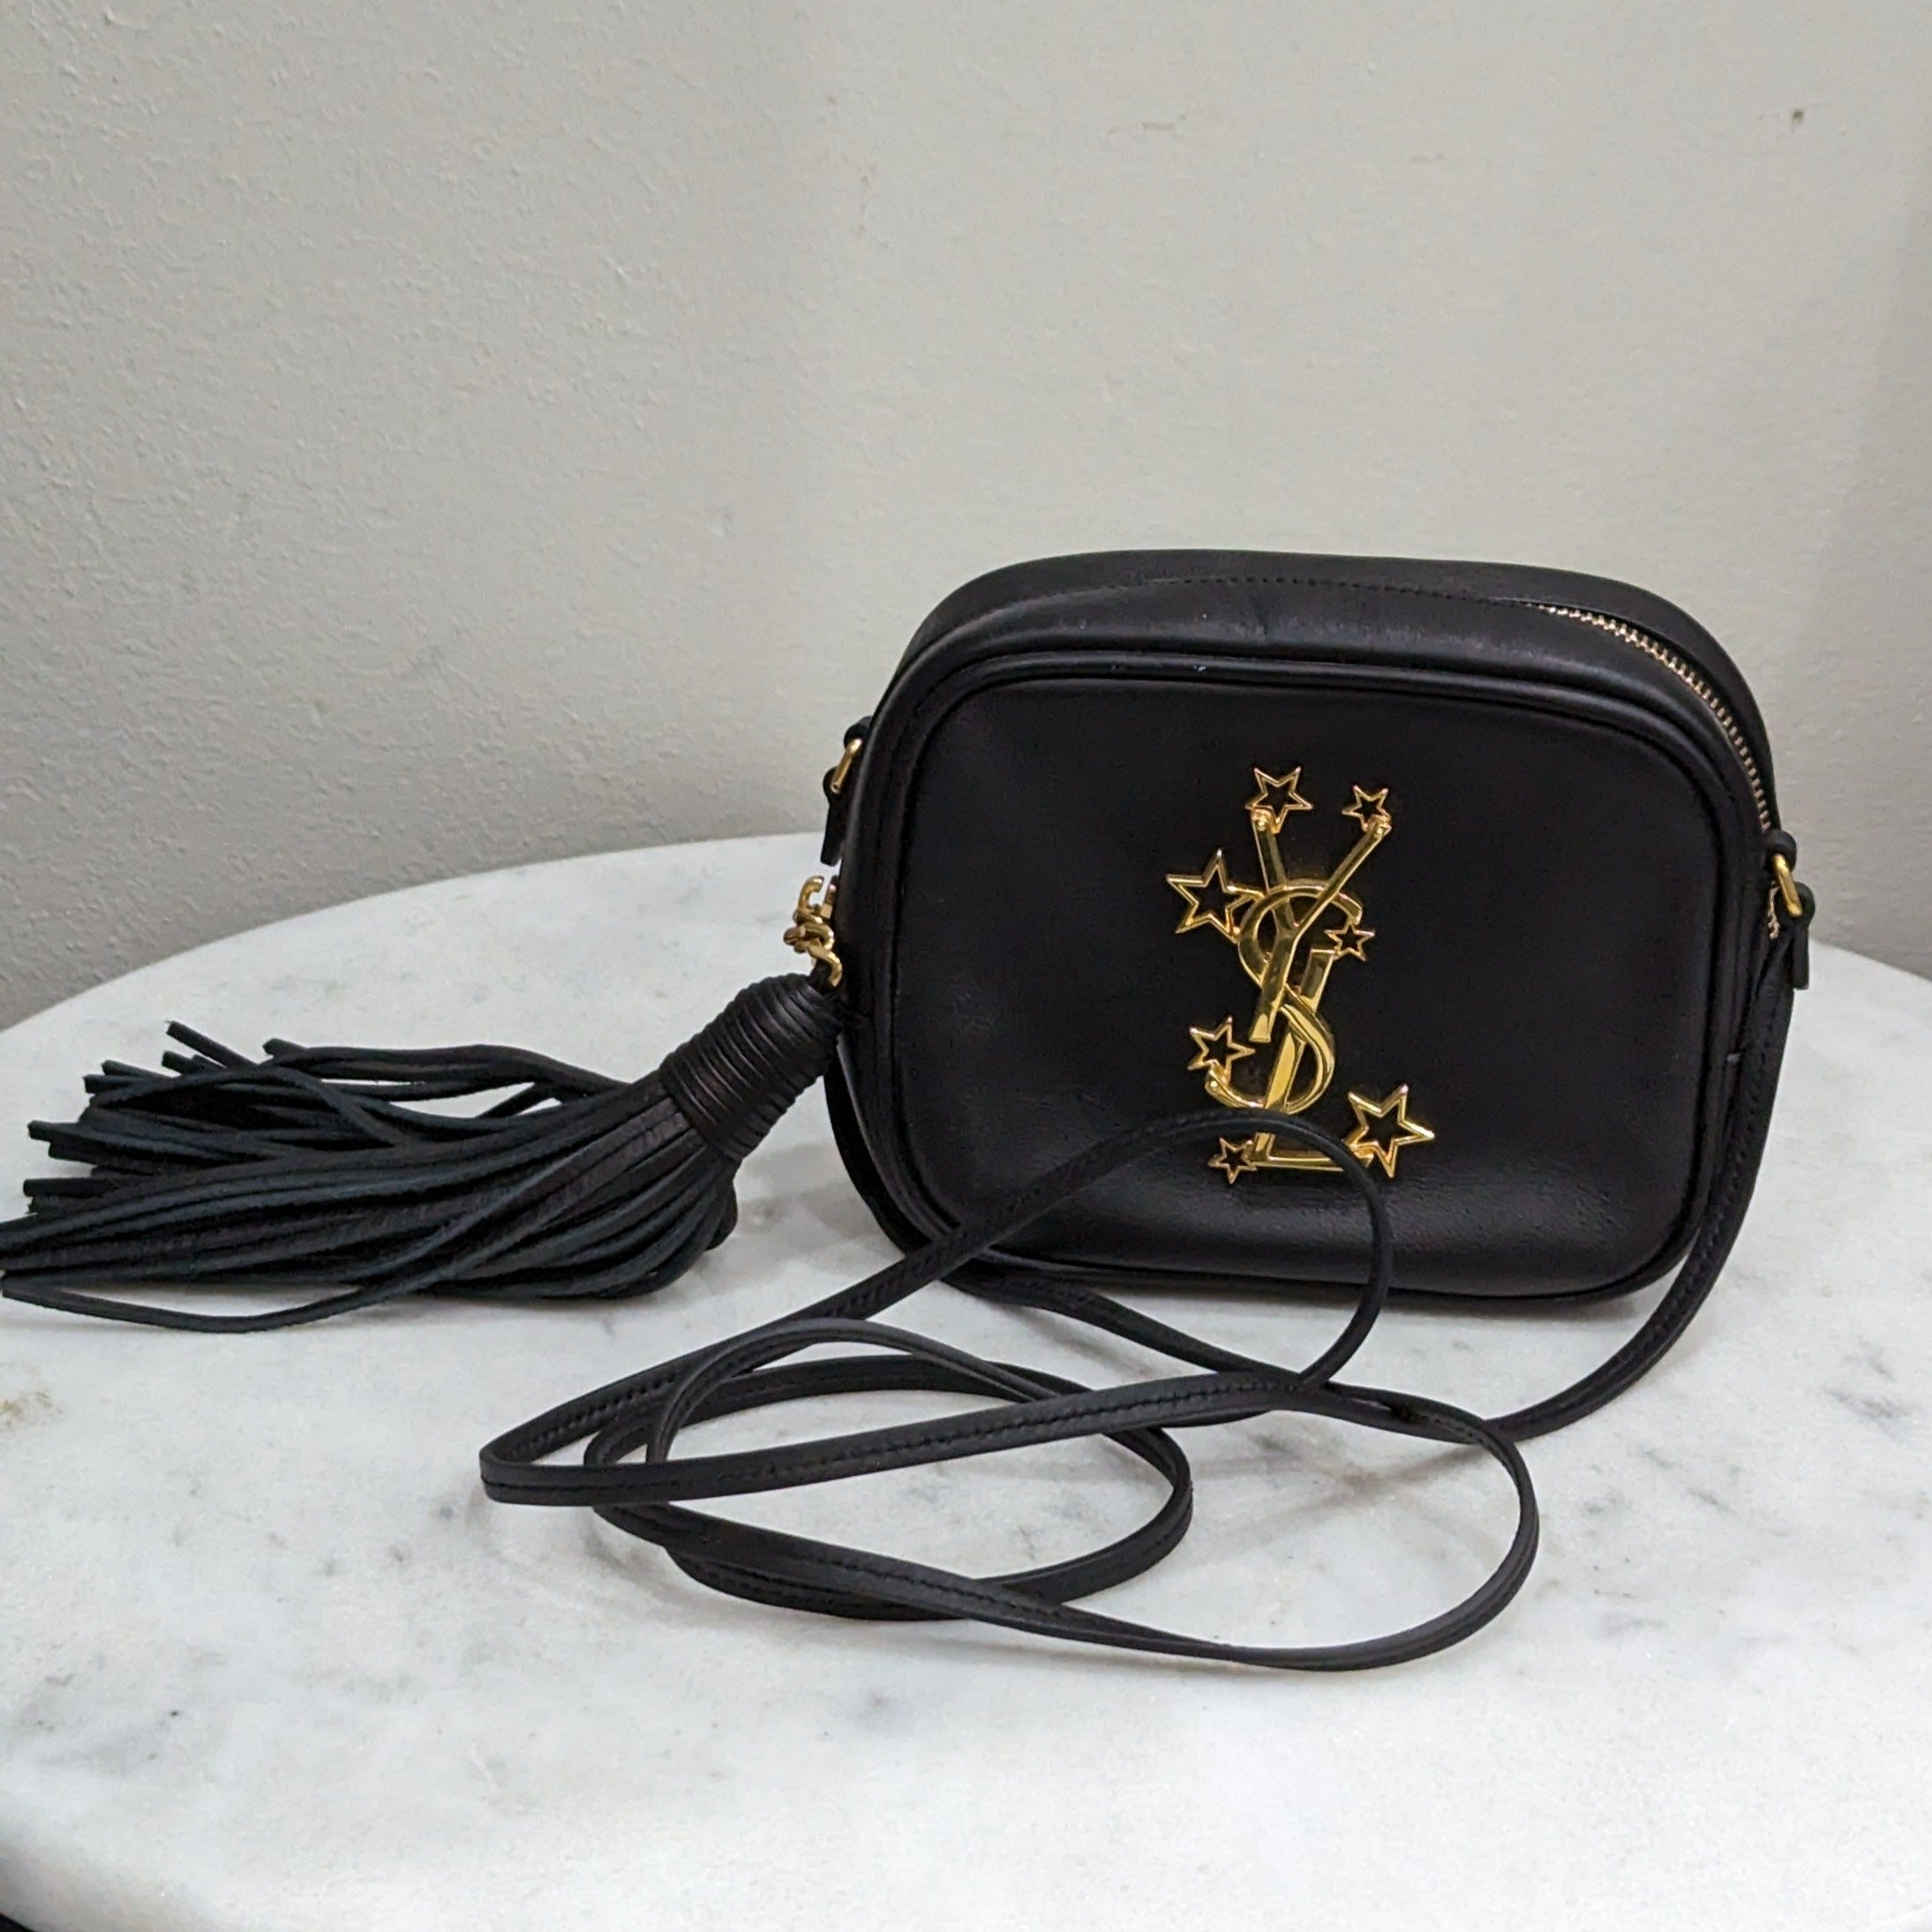 Yves Saint Laurent Black & Gold Cross Body Bag